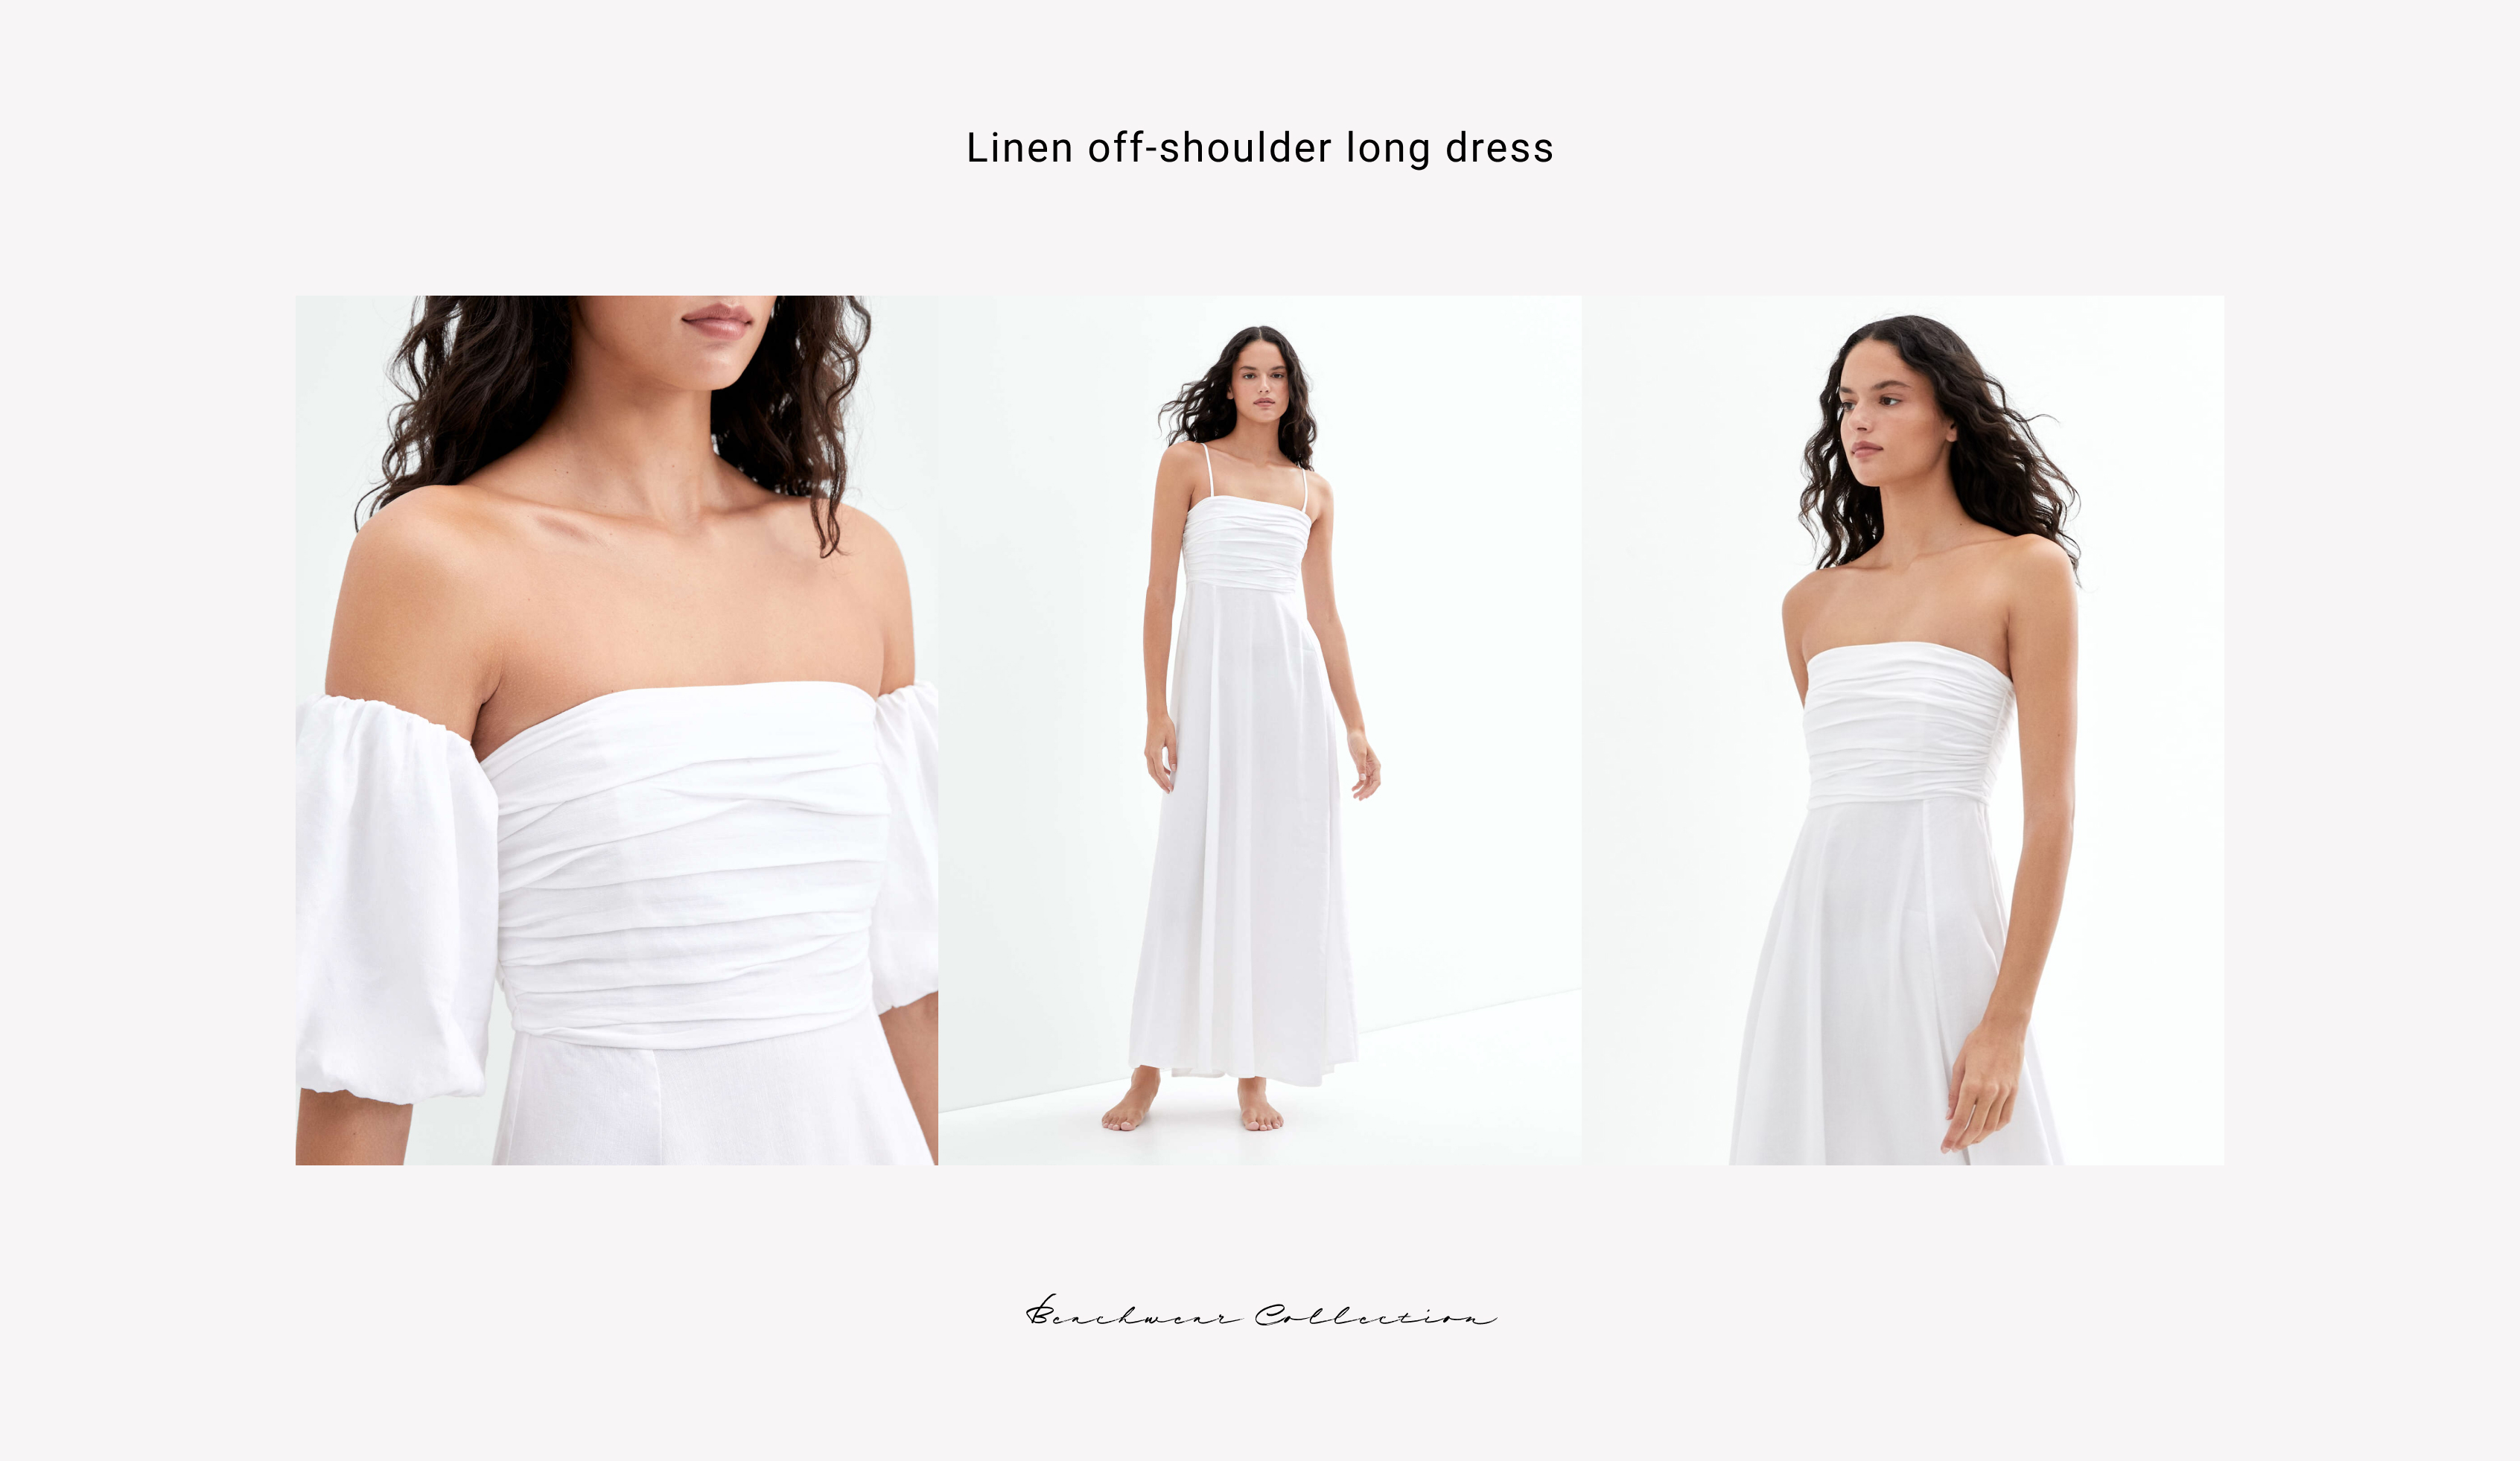 Lange off shoulder-jurk van linnen die op verschillende manieren gedragen kan worden